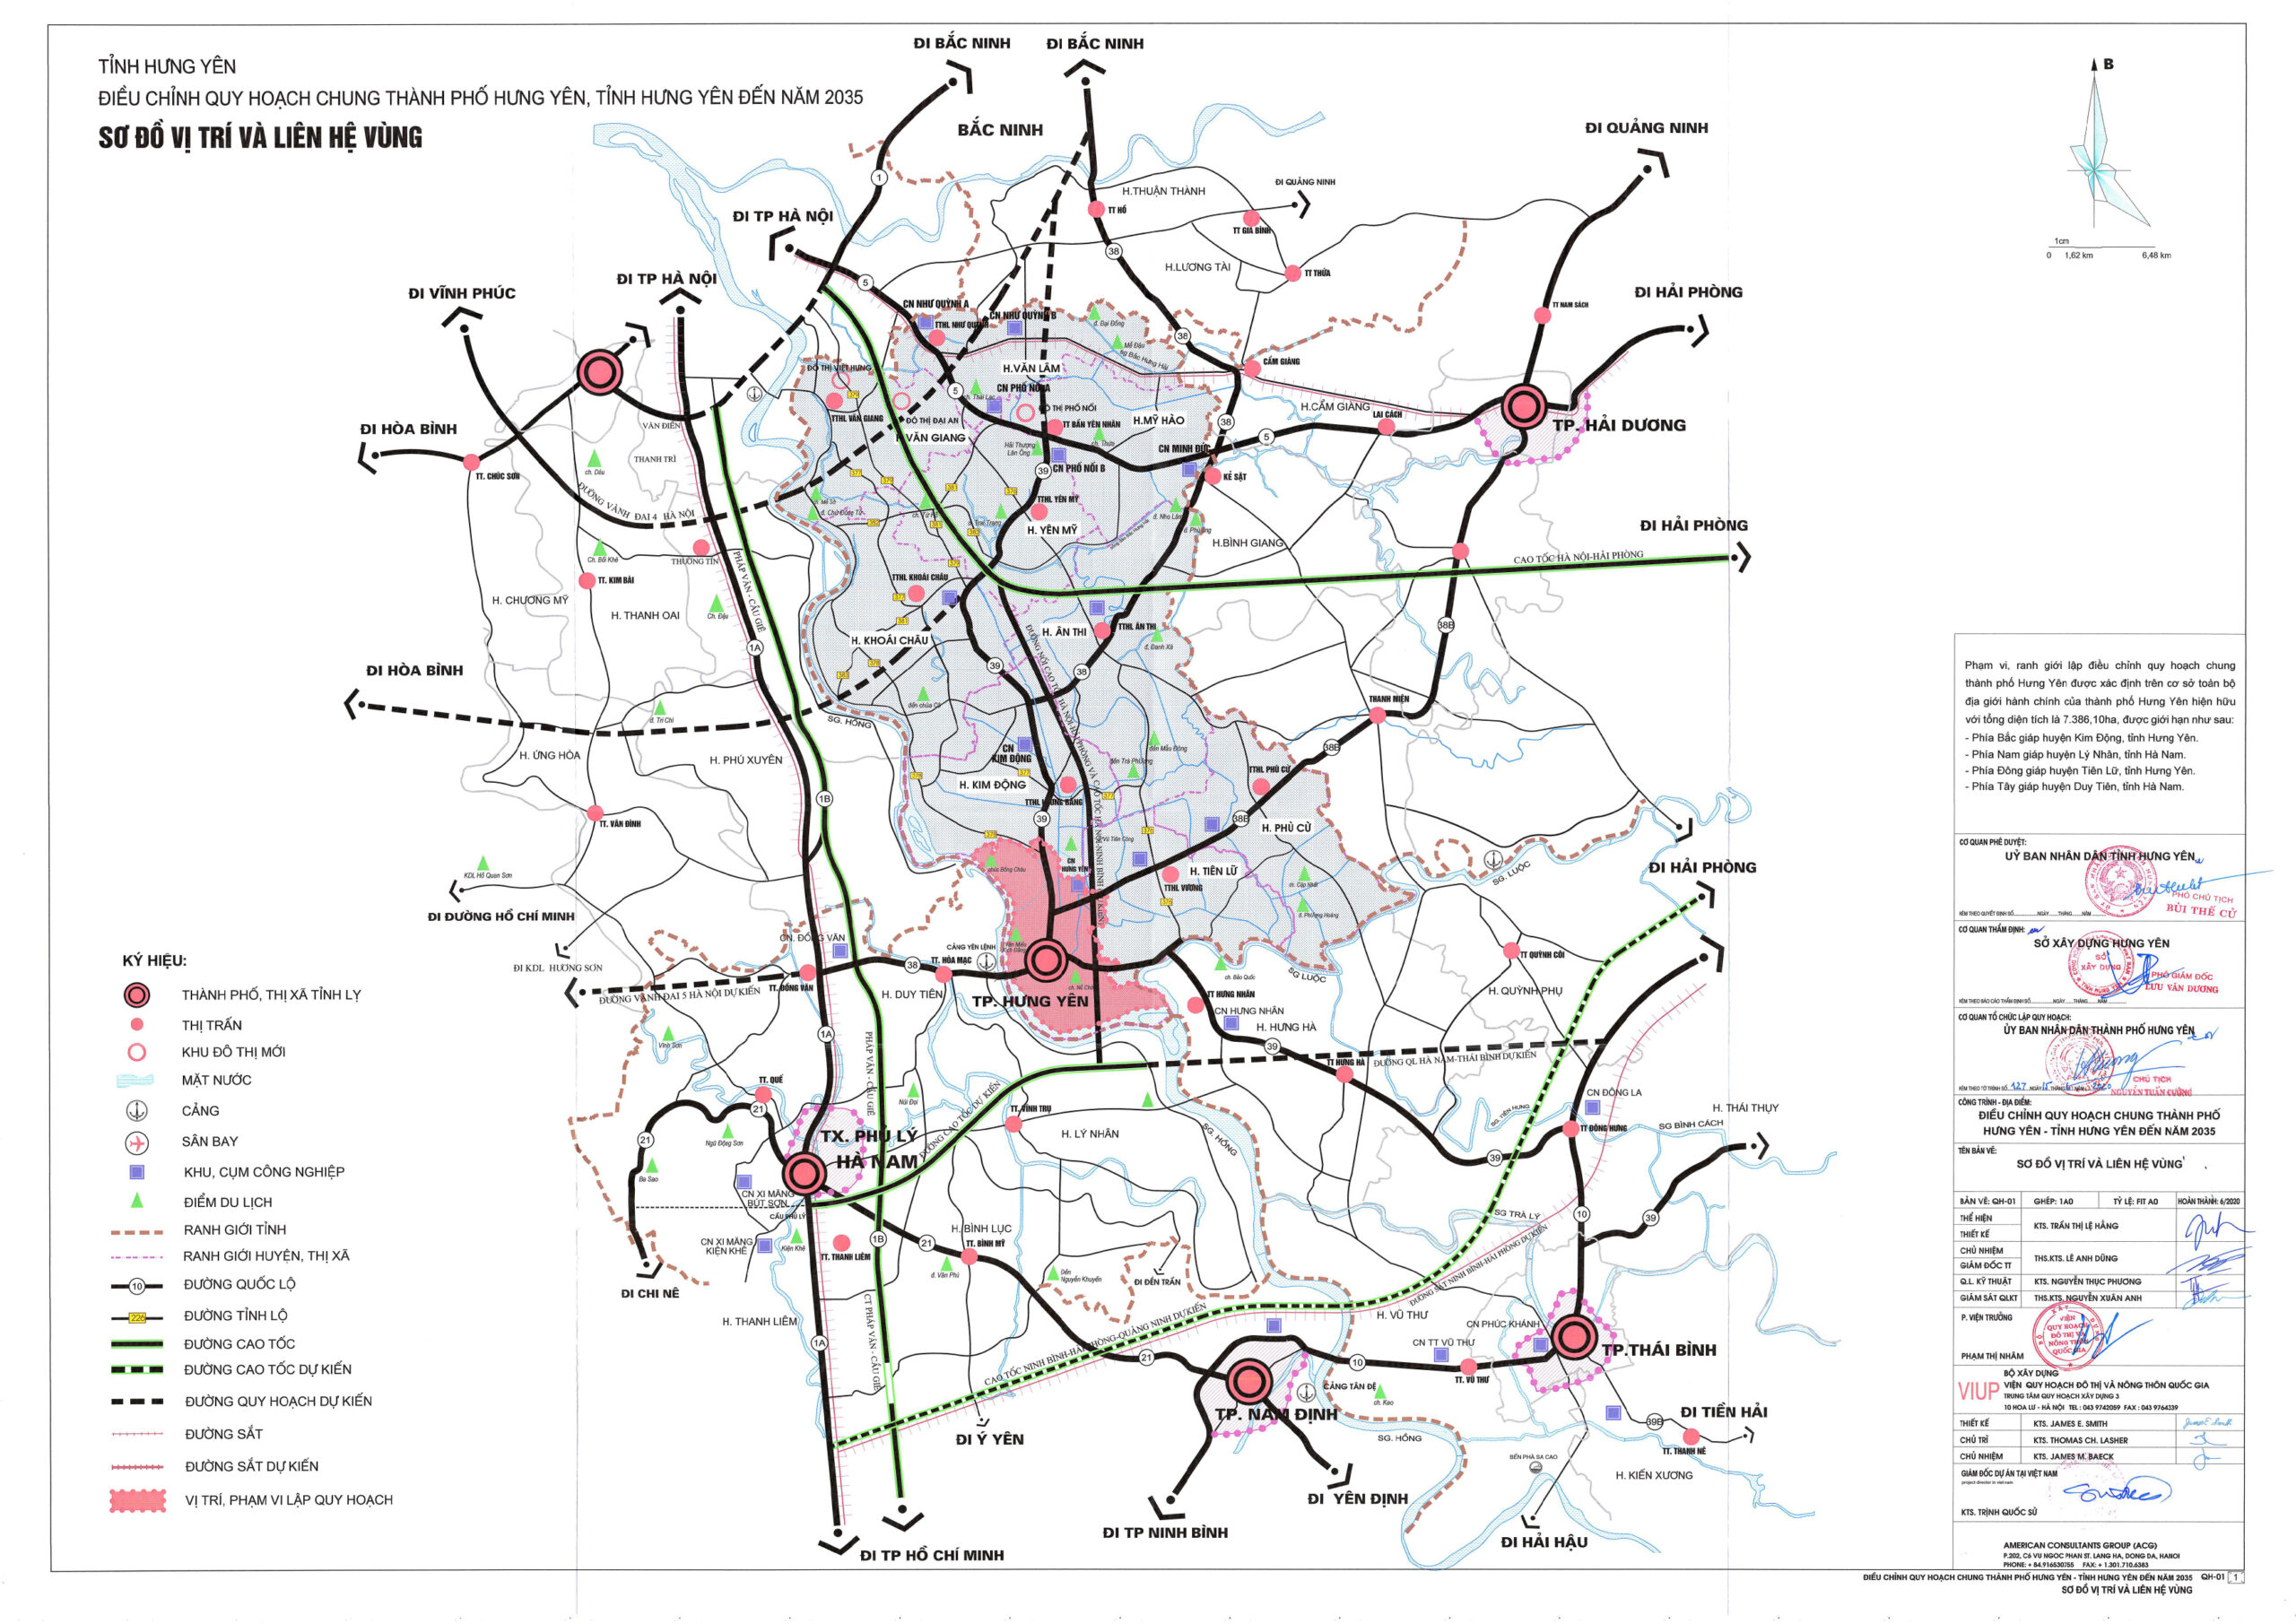 Những dự án đầy hứa hẹn trên bản đồ quy hoạch thành phố Hưng Yên 2024 sẽ khiến bạn cảm thấy phấn khởi và tràn đầy kỳ vọng. Bạn sẽ nhận thấy rằng Hưng Yên đang trở thành một thành phố sáng tạo, hiện đại và phát triển vượt bậc.